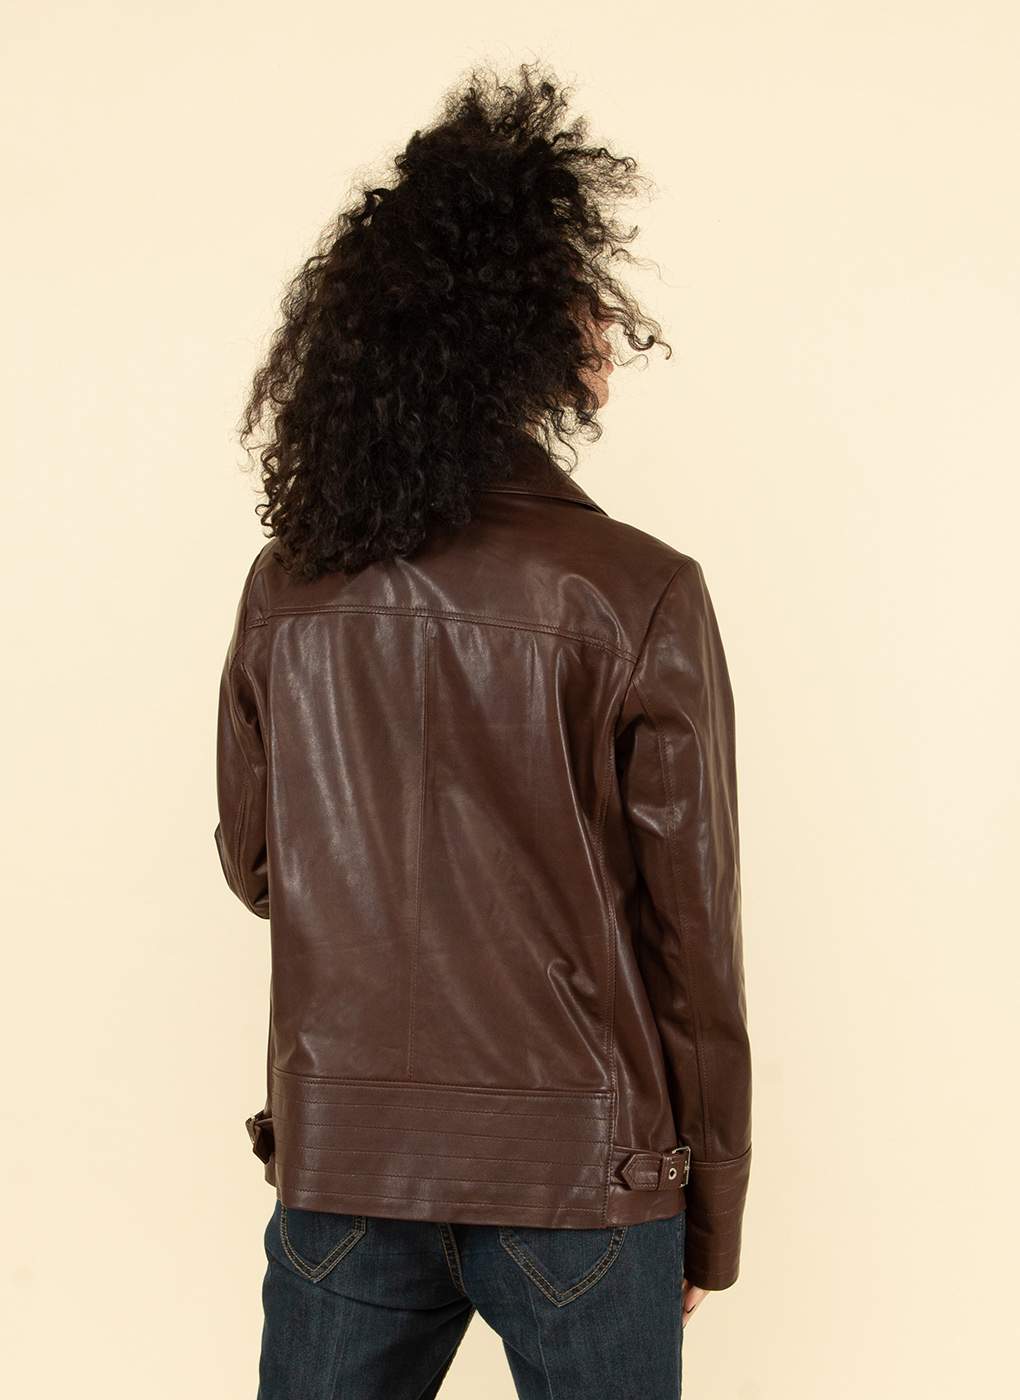 Кожаная куртка женская Каляев 55130 коричневая 46 RU